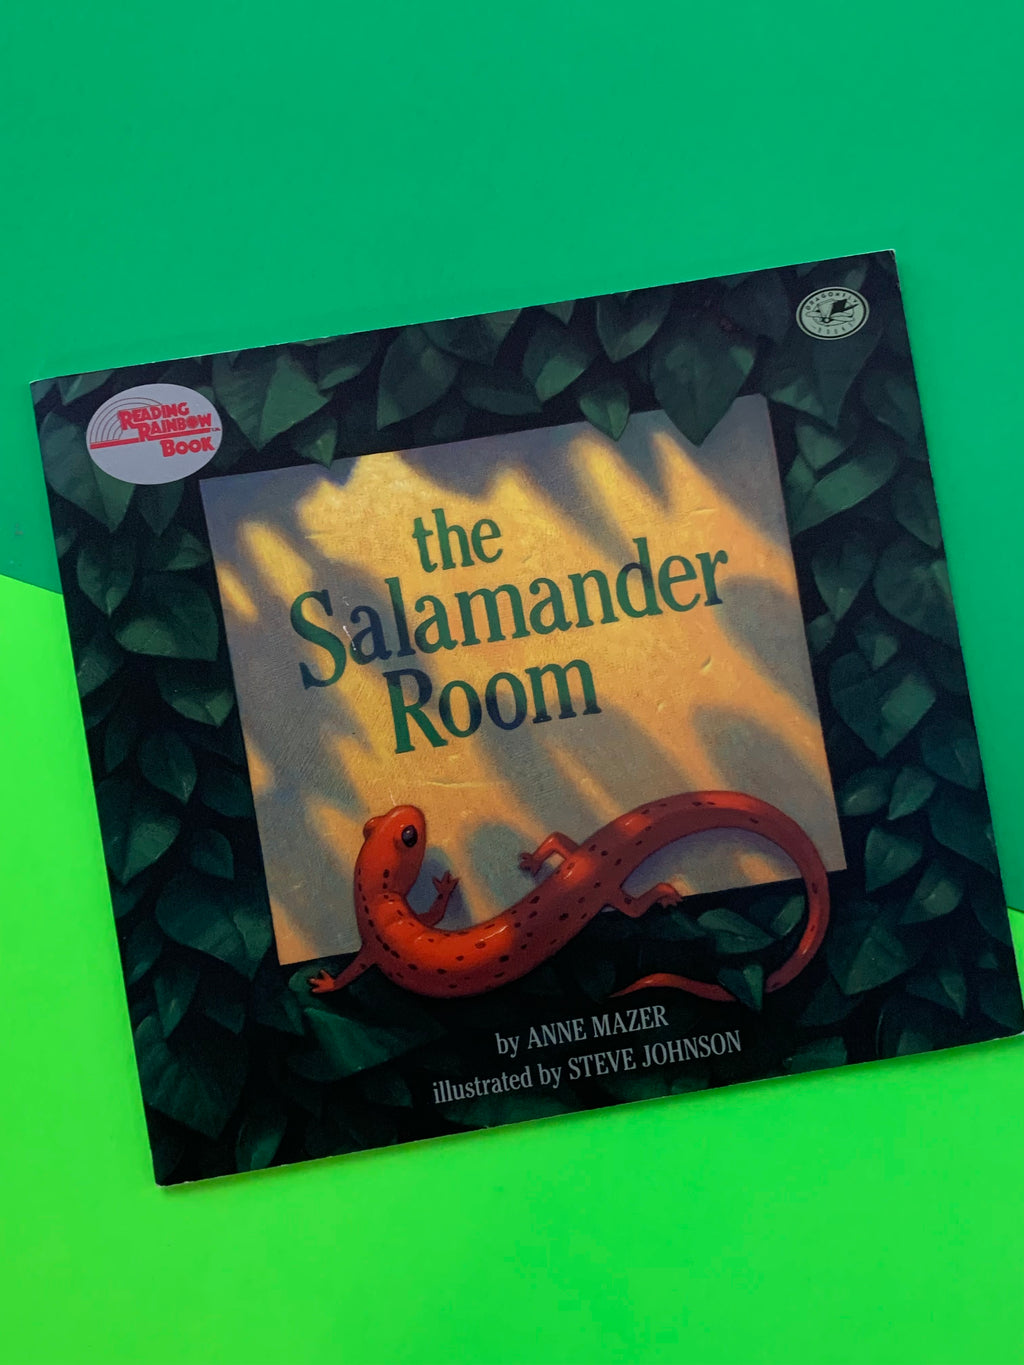 The Salamander Room- By Anne Mazer